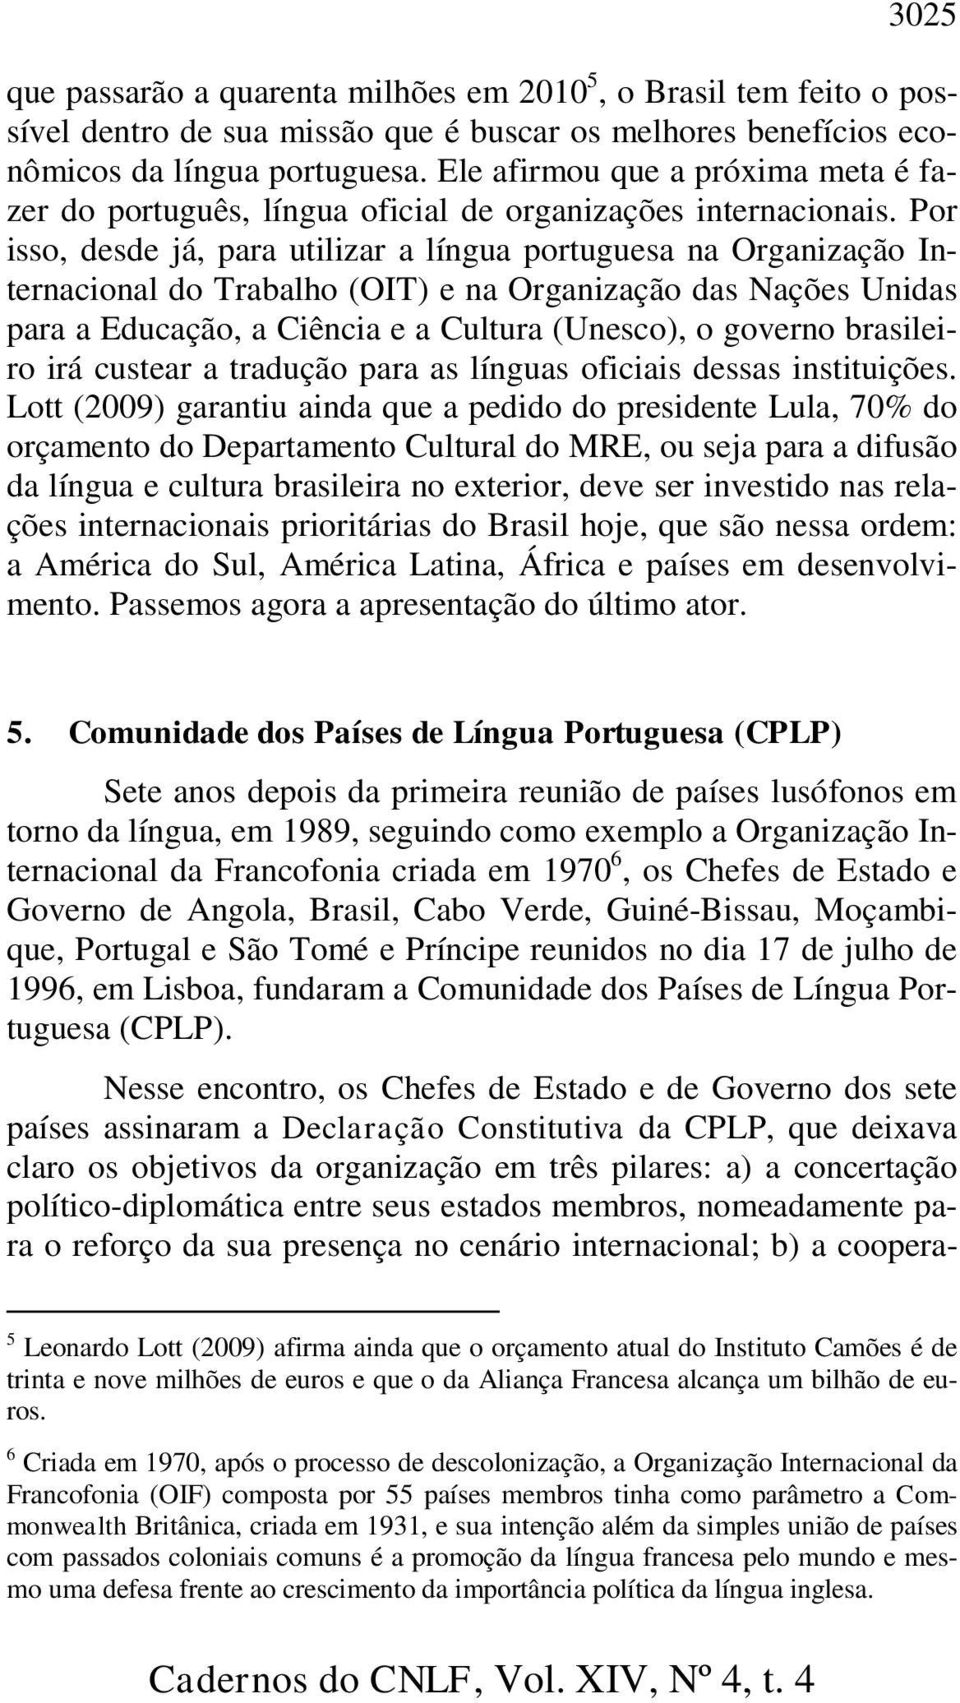 Por isso, desde já, para utilizar a língua portuguesa na Organização Internacional do Trabalho (OIT) e na Organização das Nações Unidas para a Educação, a Ciência e a Cultura (Unesco), o governo